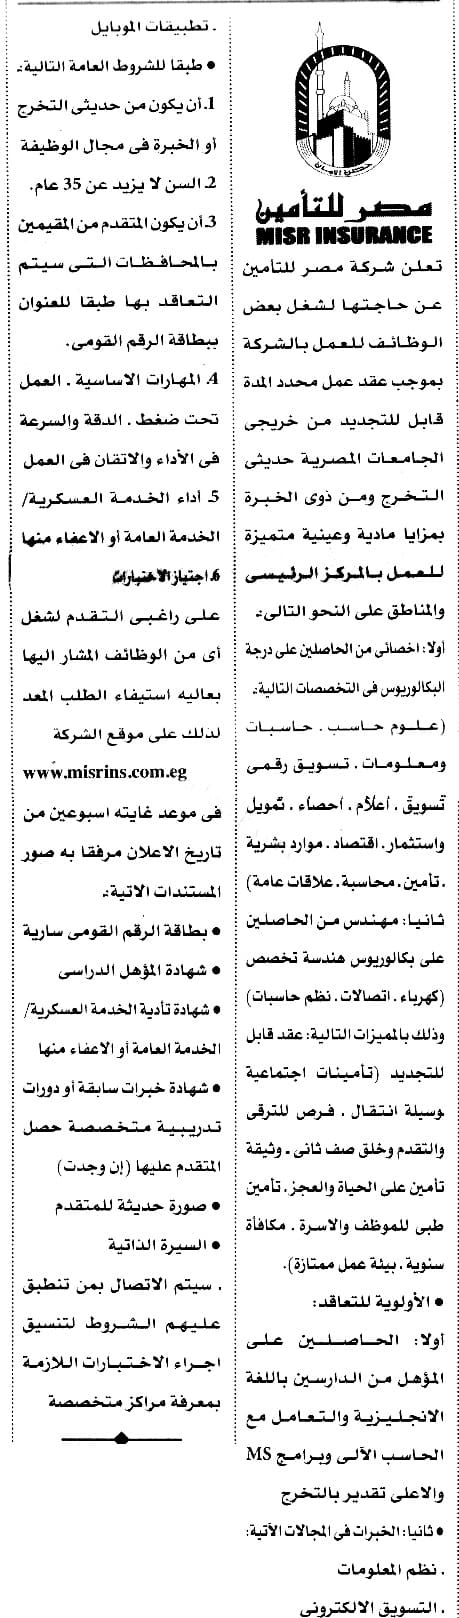 وظائف الاهرام الجمعه 24-6-2022 ( جريدة الاهرام اليوم 24 يونيو )